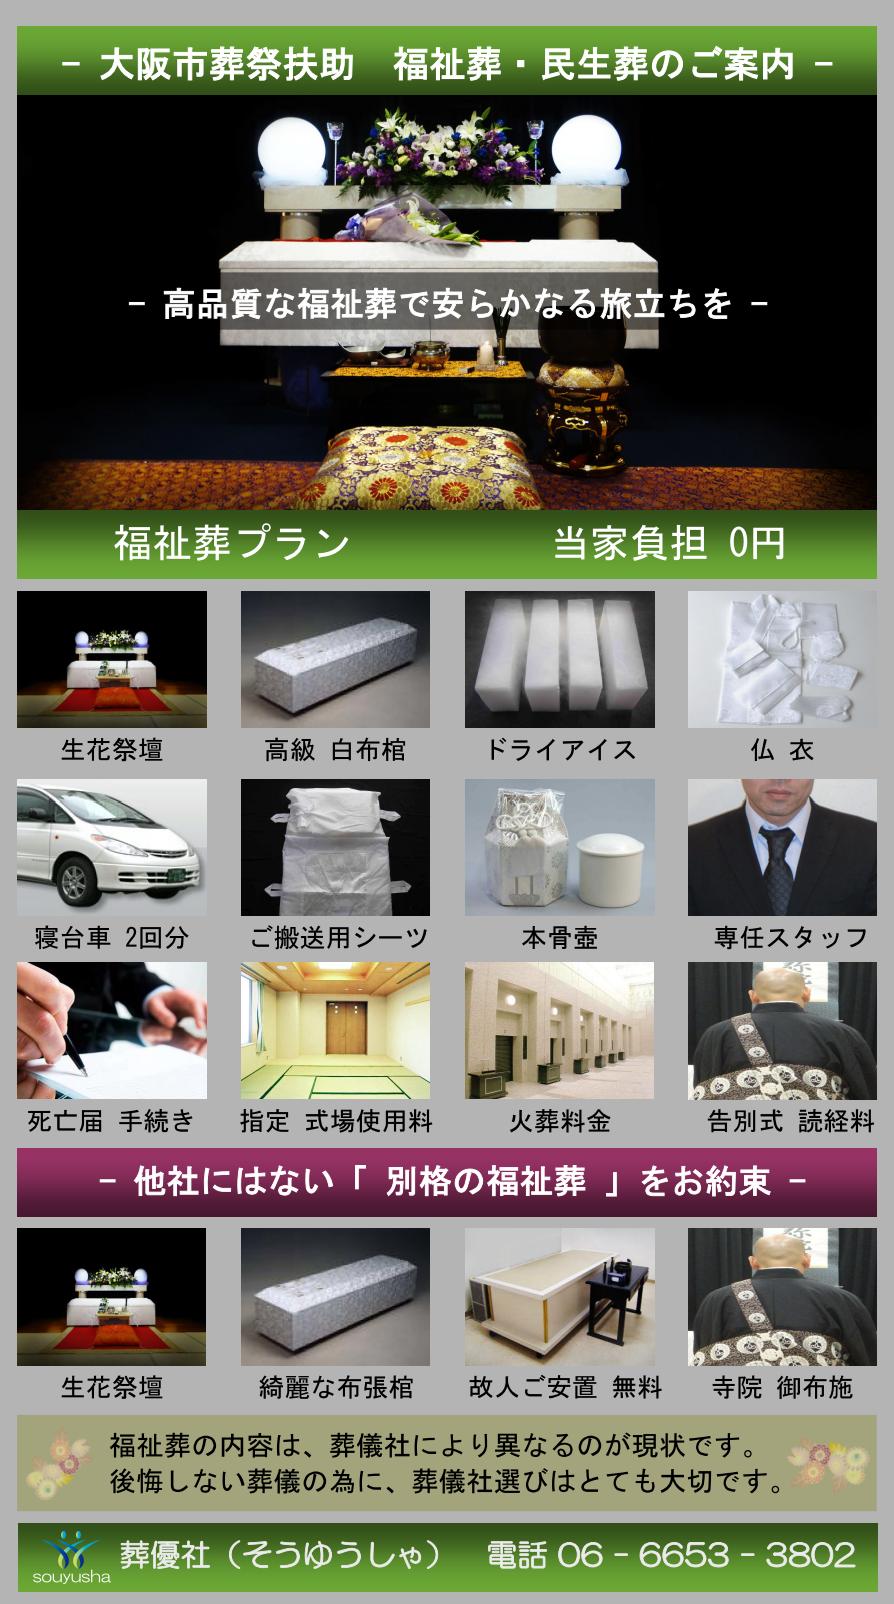 大阪市 住之江区での福祉葬、生活保護者のお葬式のご案内